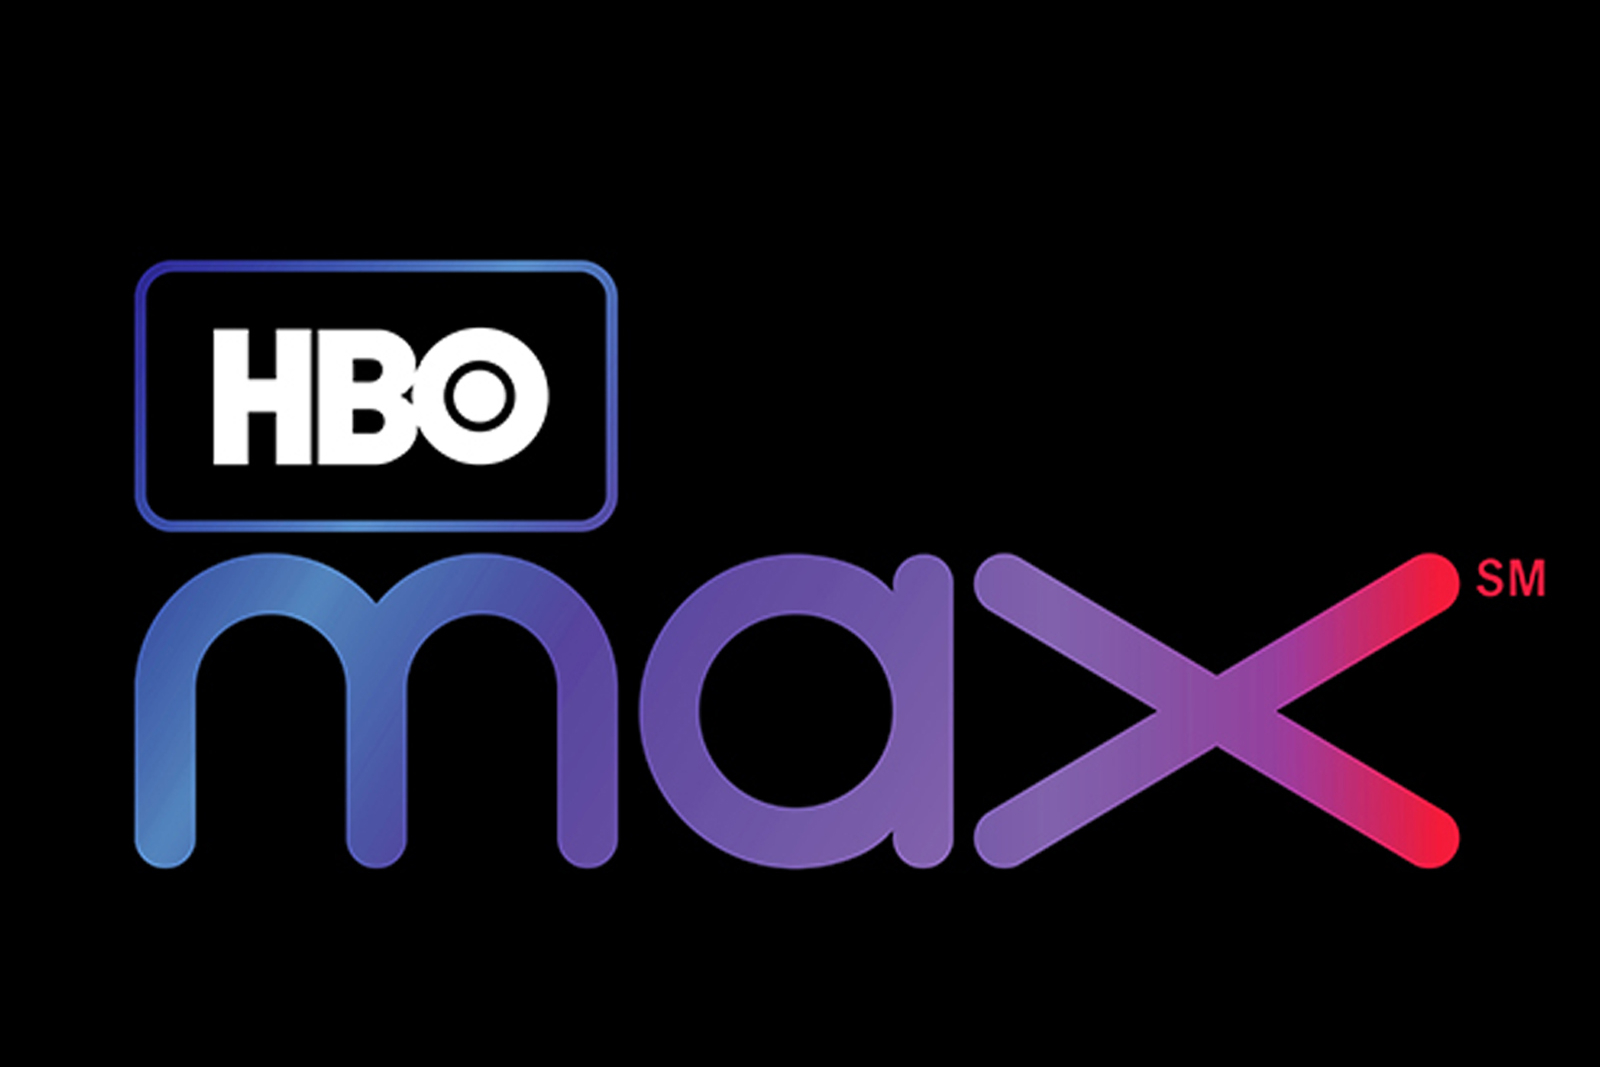 AT&T incluirá HBO Max gratuitamente no lançamento para alguns de seus clientes